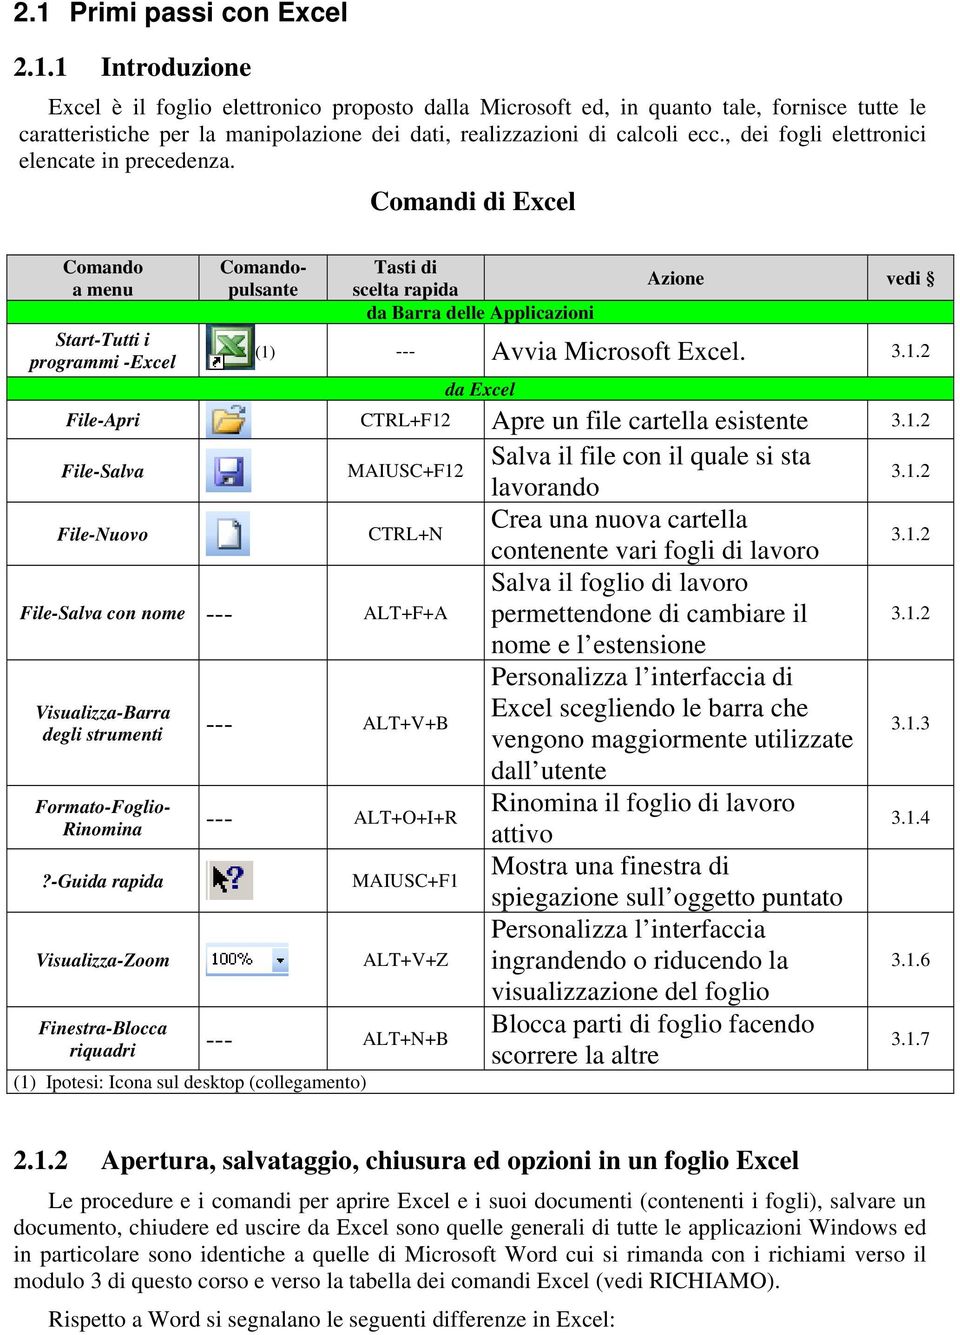 Comandi di Excel Comando a menu Start-Tutti i programmi -Excel File-Nuovo Comandopulsante File-Salva con nome --- ALT+F+A Visualizza-Barra degli strumenti --- ALT+V+B Tasti di scelta rapida da Barra